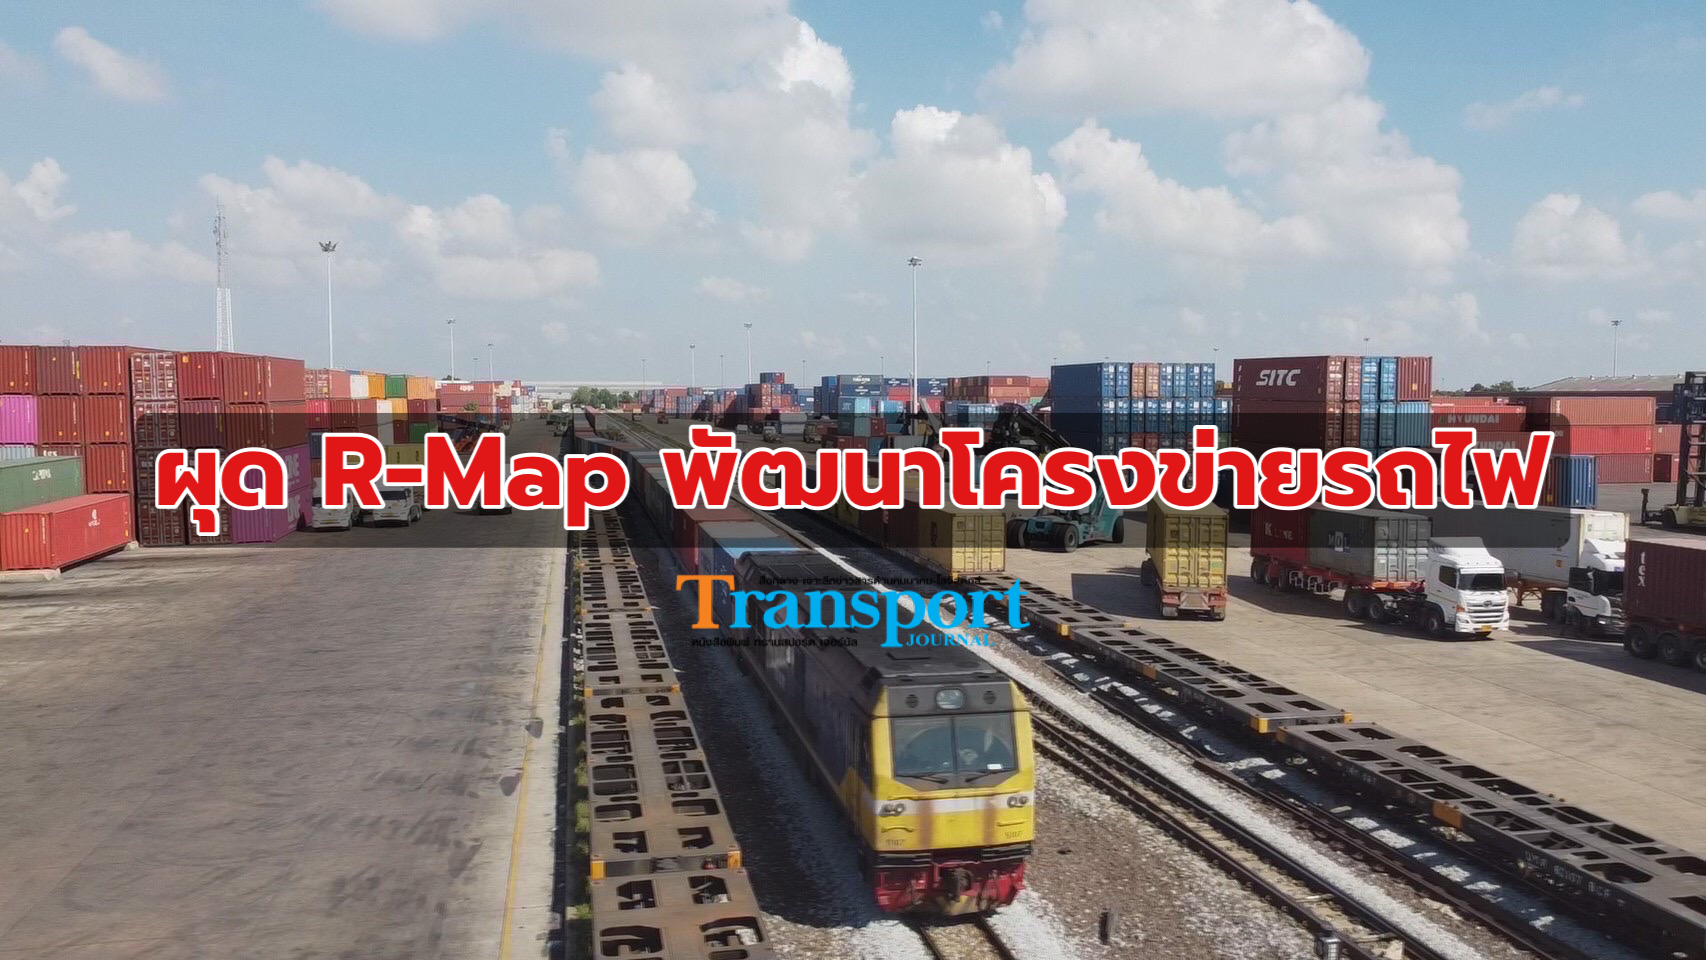 ‘ กรมรางฯ’ ลุยศึกษา R-Map พัฒนาโครงข่ายรถไฟ เชื่อมโยงพื้นที่ทั่วประเทศ รองรับการขนส่งไร้รอยต่อ